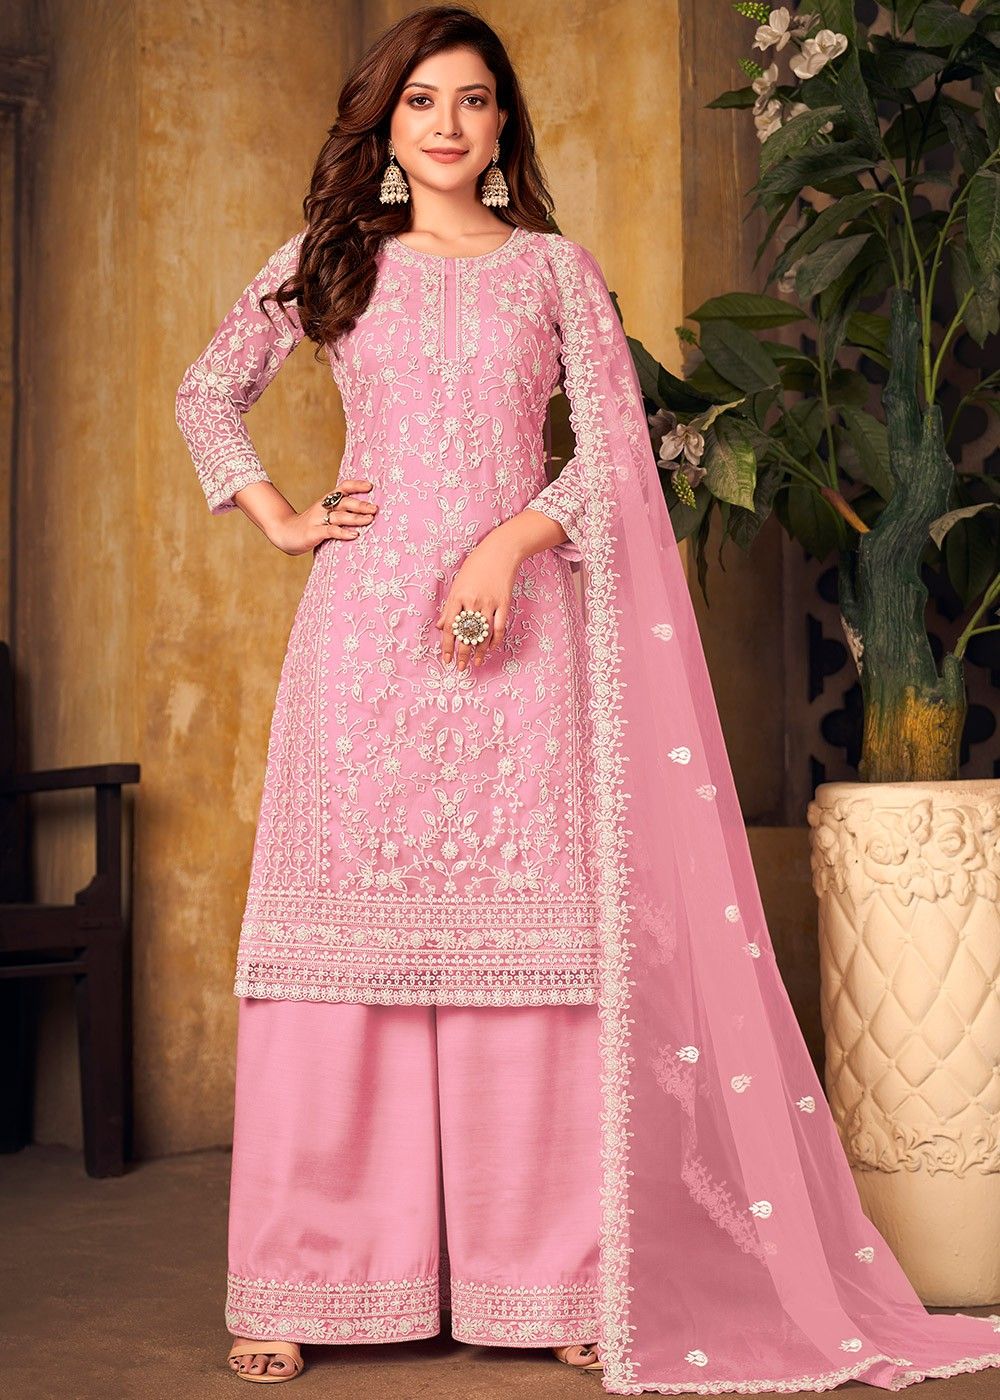 Women's Cotton Kurta with Pant & Dupatta Set Indian/ Pakistani Kurti Plazo  set | eBay